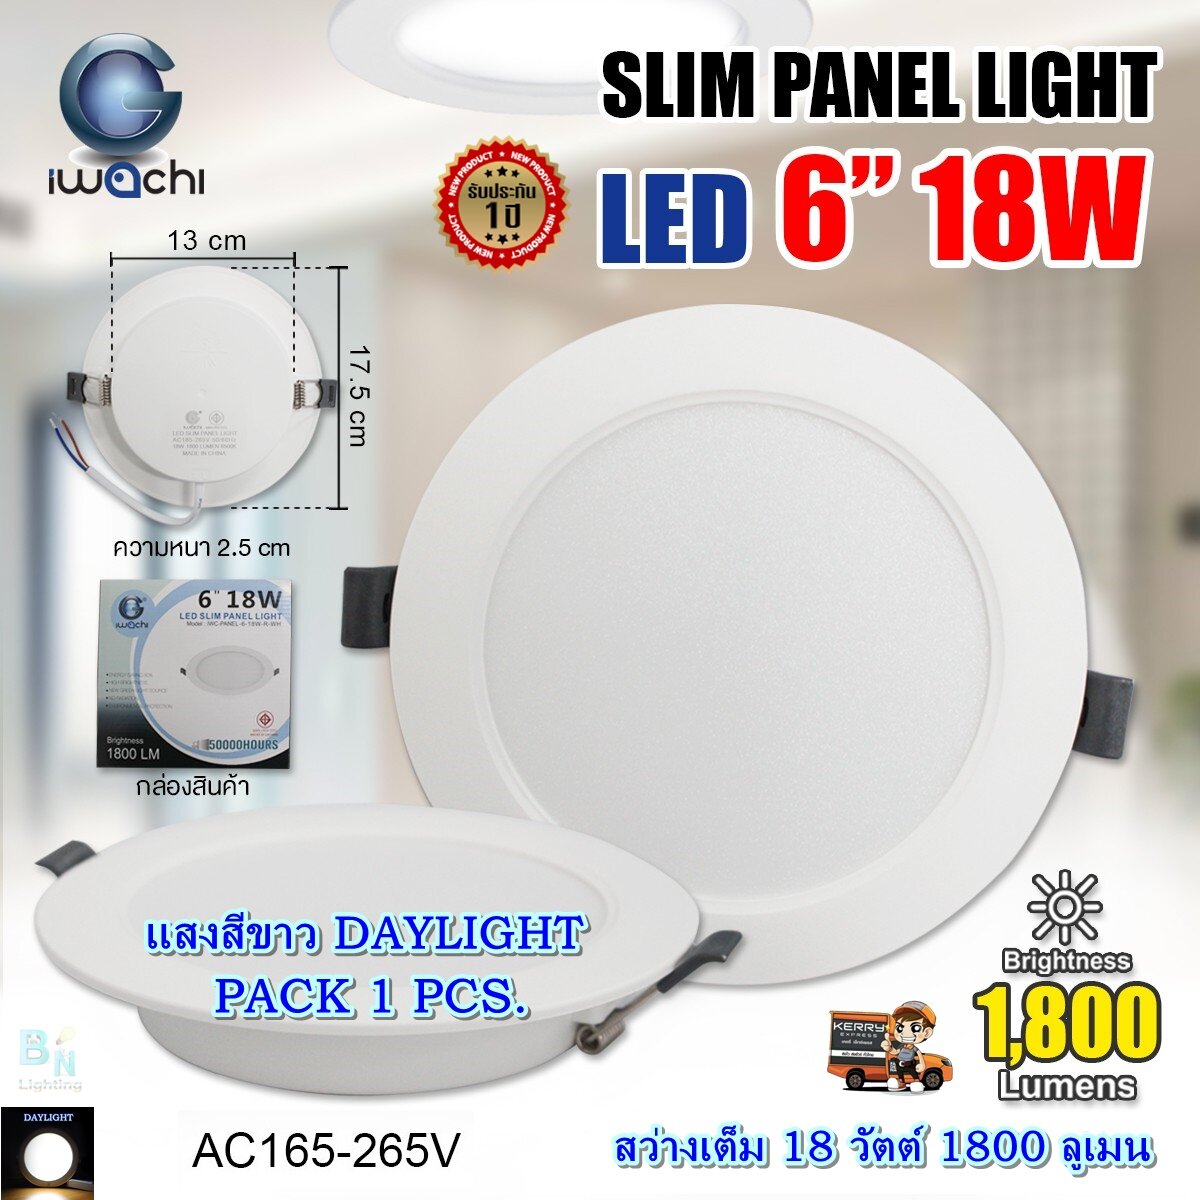 โคมไฟดาวน์ไลท์ LED ดาวไลท์ LED ดาวน์ไลท์ฝังฝ้า โคมไฟ LED โคมไฟติดเพดาน LED หลอดไฟดาวน์ไลท์ Downlight แบบกลม 6 นิ้ว 18 วัตต์ IWACHI แสงสีขาว (แพ็ค 1 ชุด)